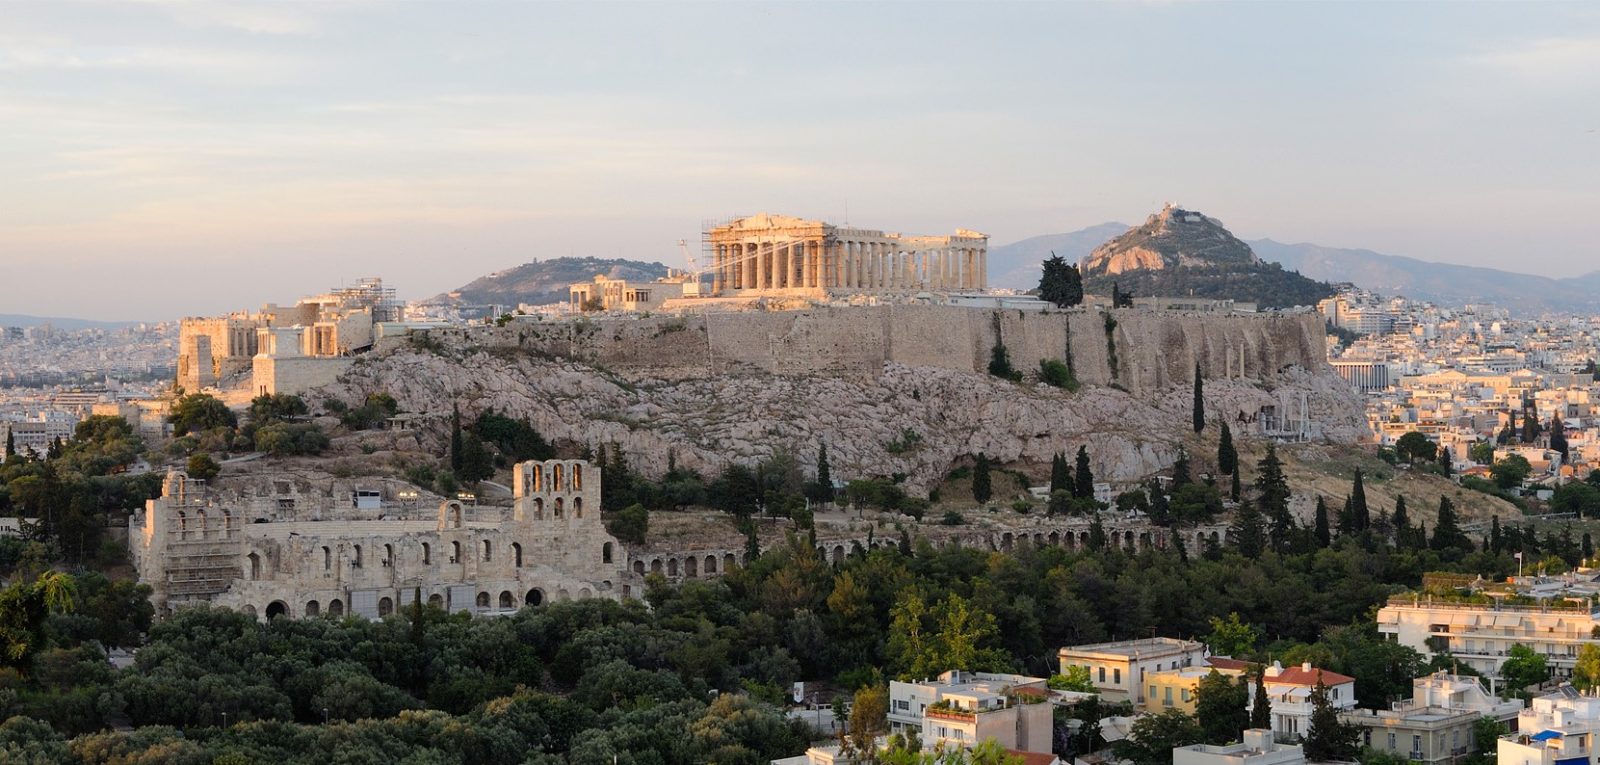 The Parthenon mythology